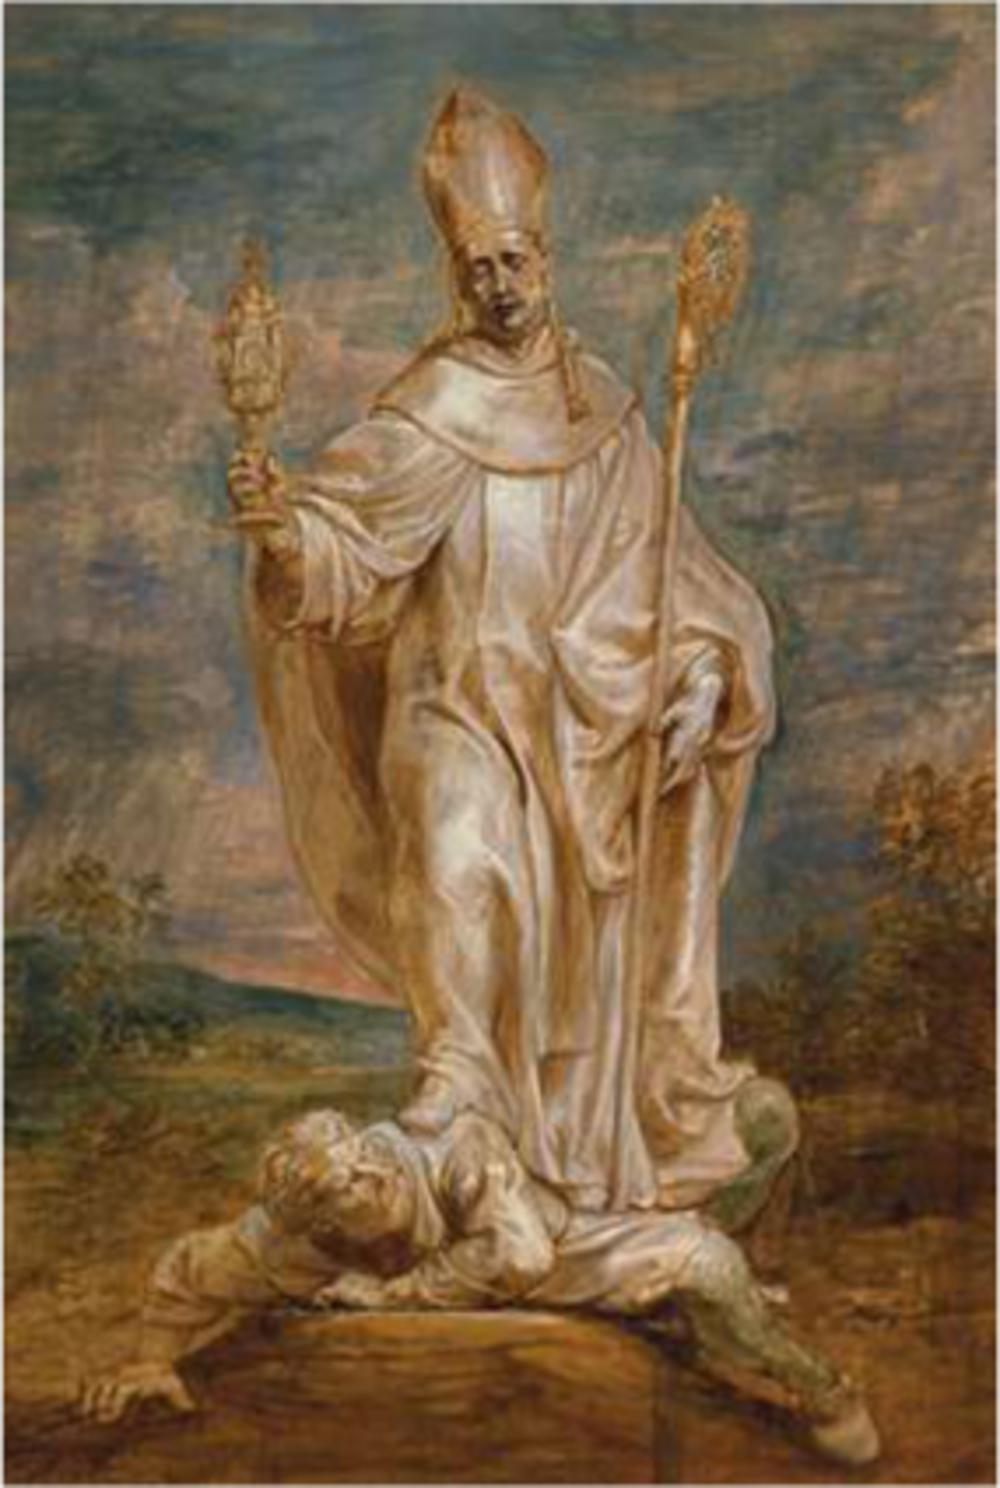 De heilige Norbertus overwint de ketter Tanchelm. Schilderij van Peter Paul Rubens. (Sotheby's)